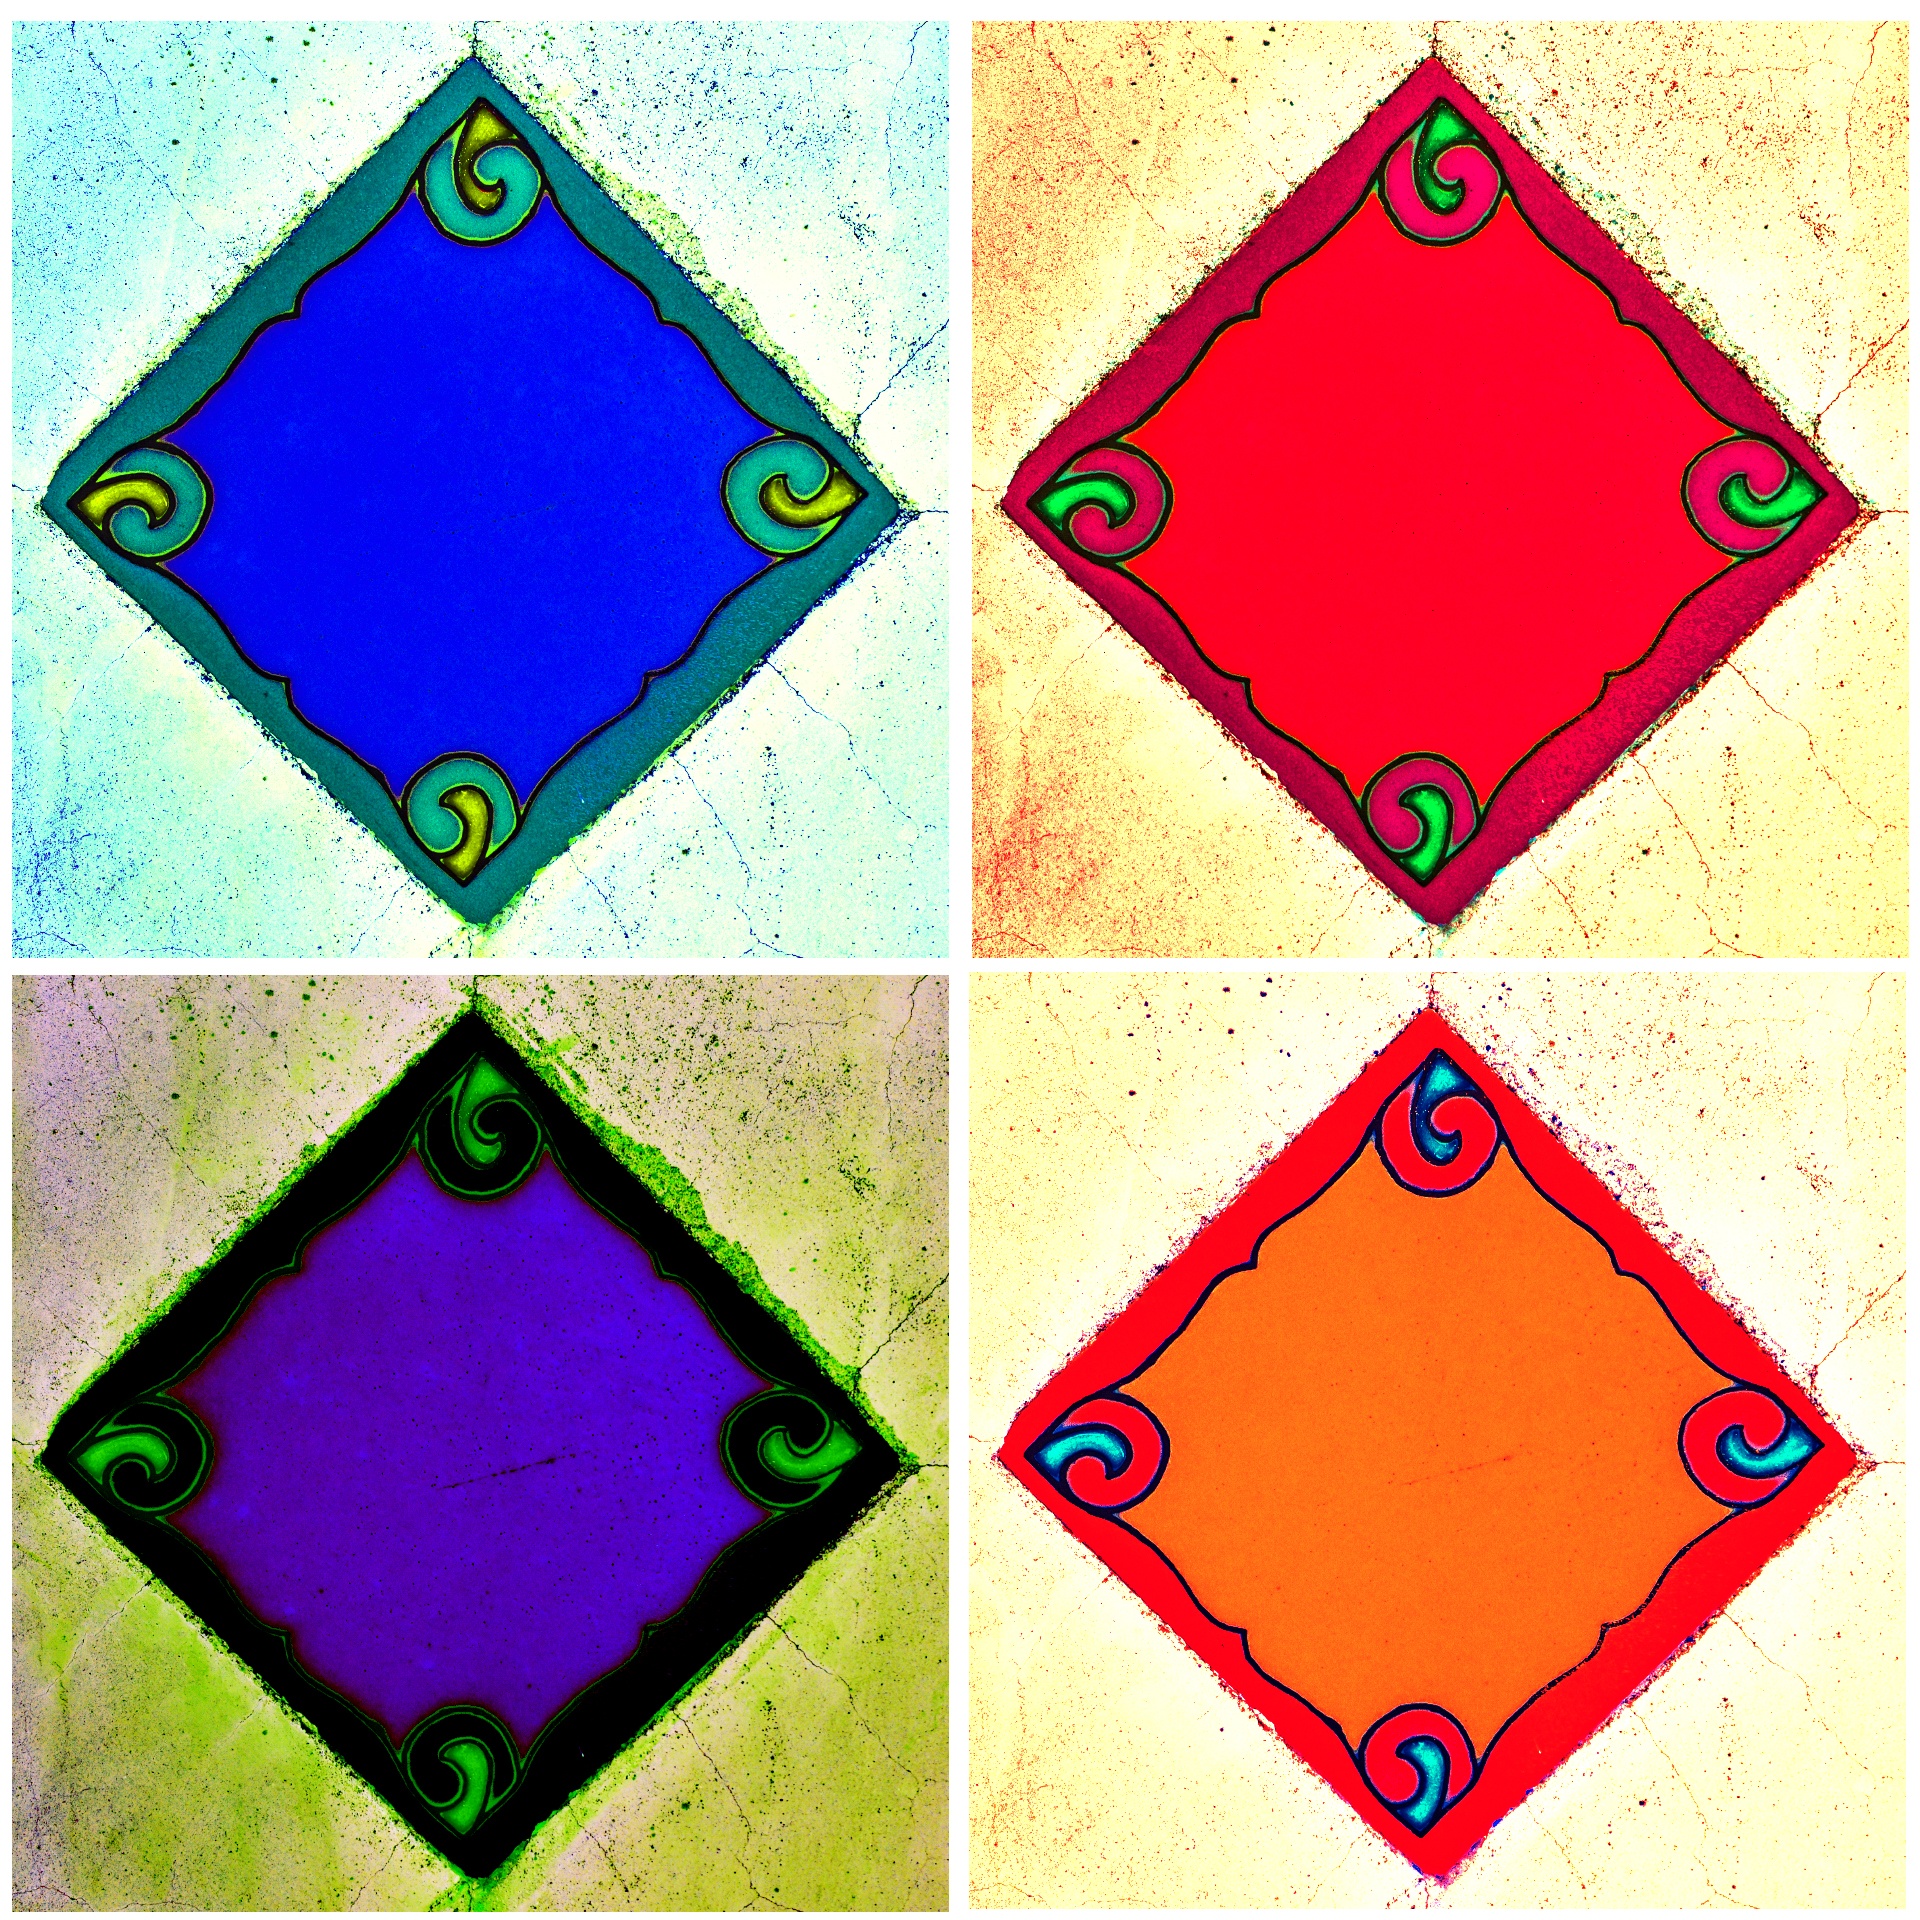 Four color tiles